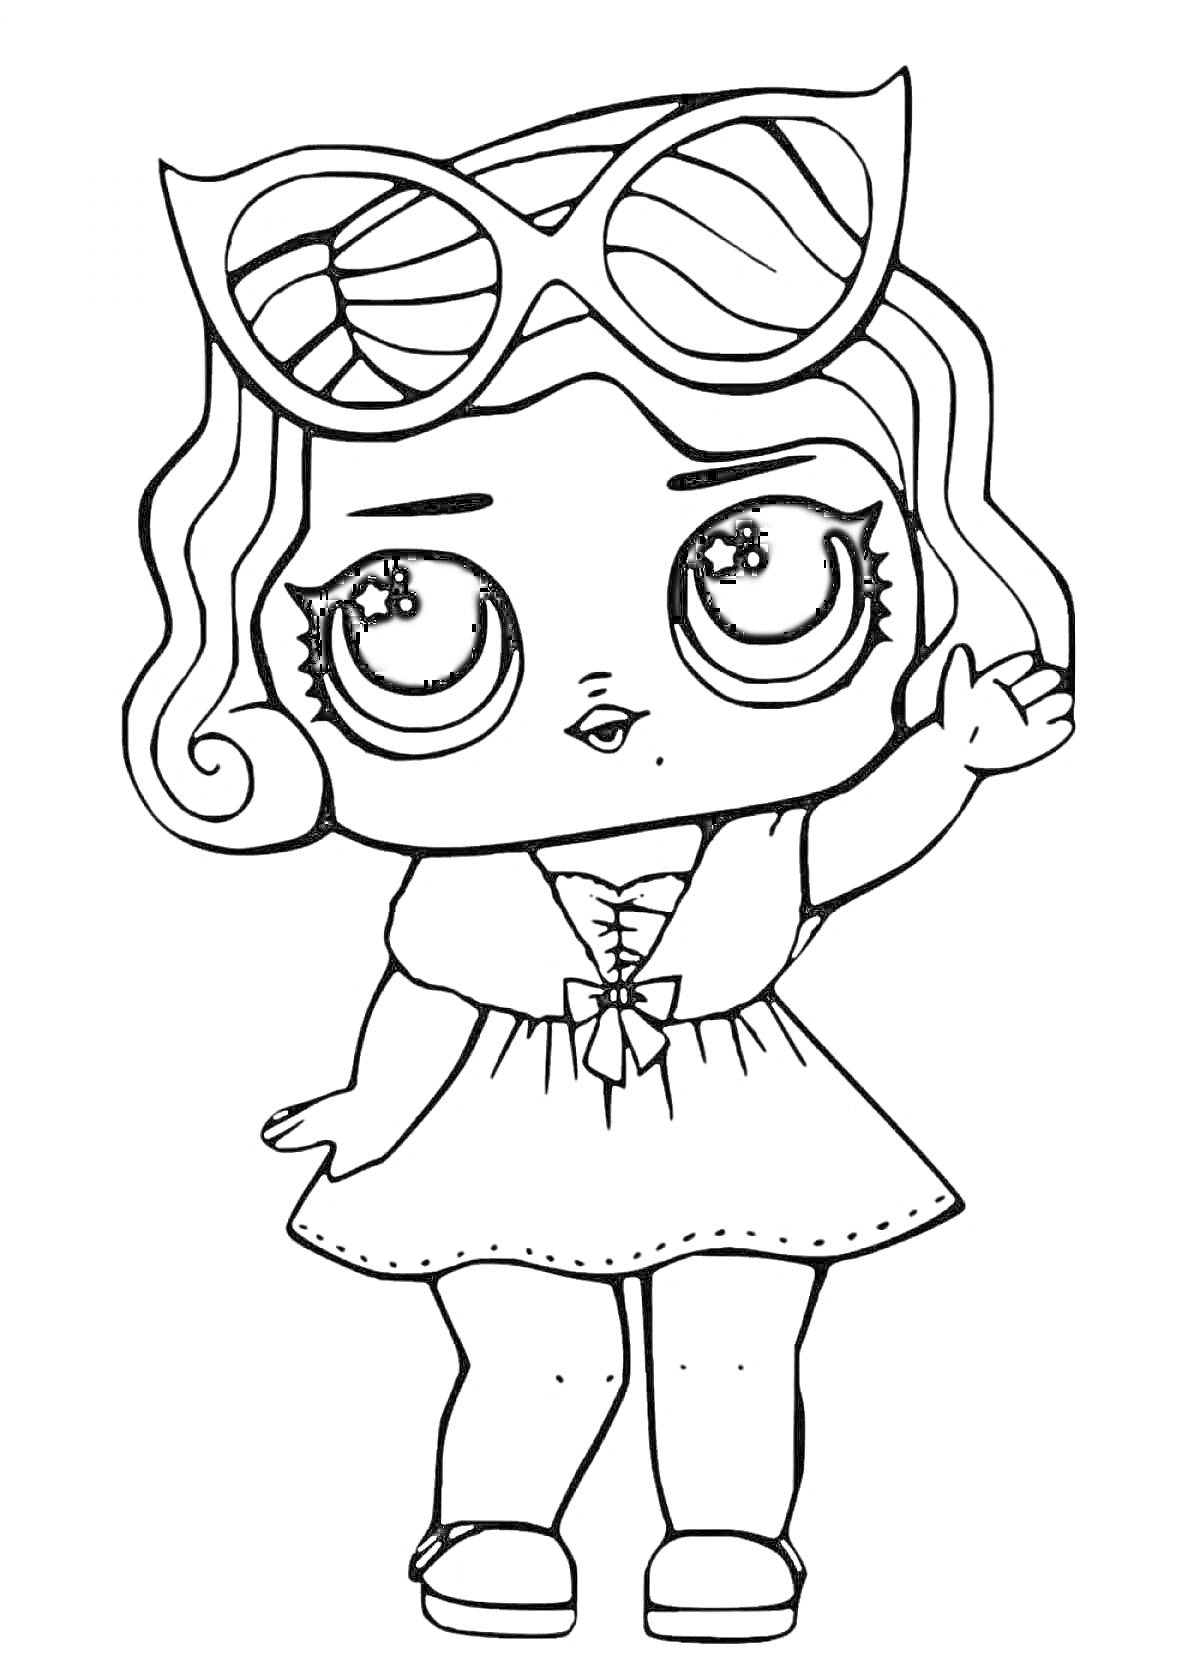 Раскраска Кукла ЛОЛ с распущенными волосами, в платье и с большими солнцезащитными очками, машущая рукой.